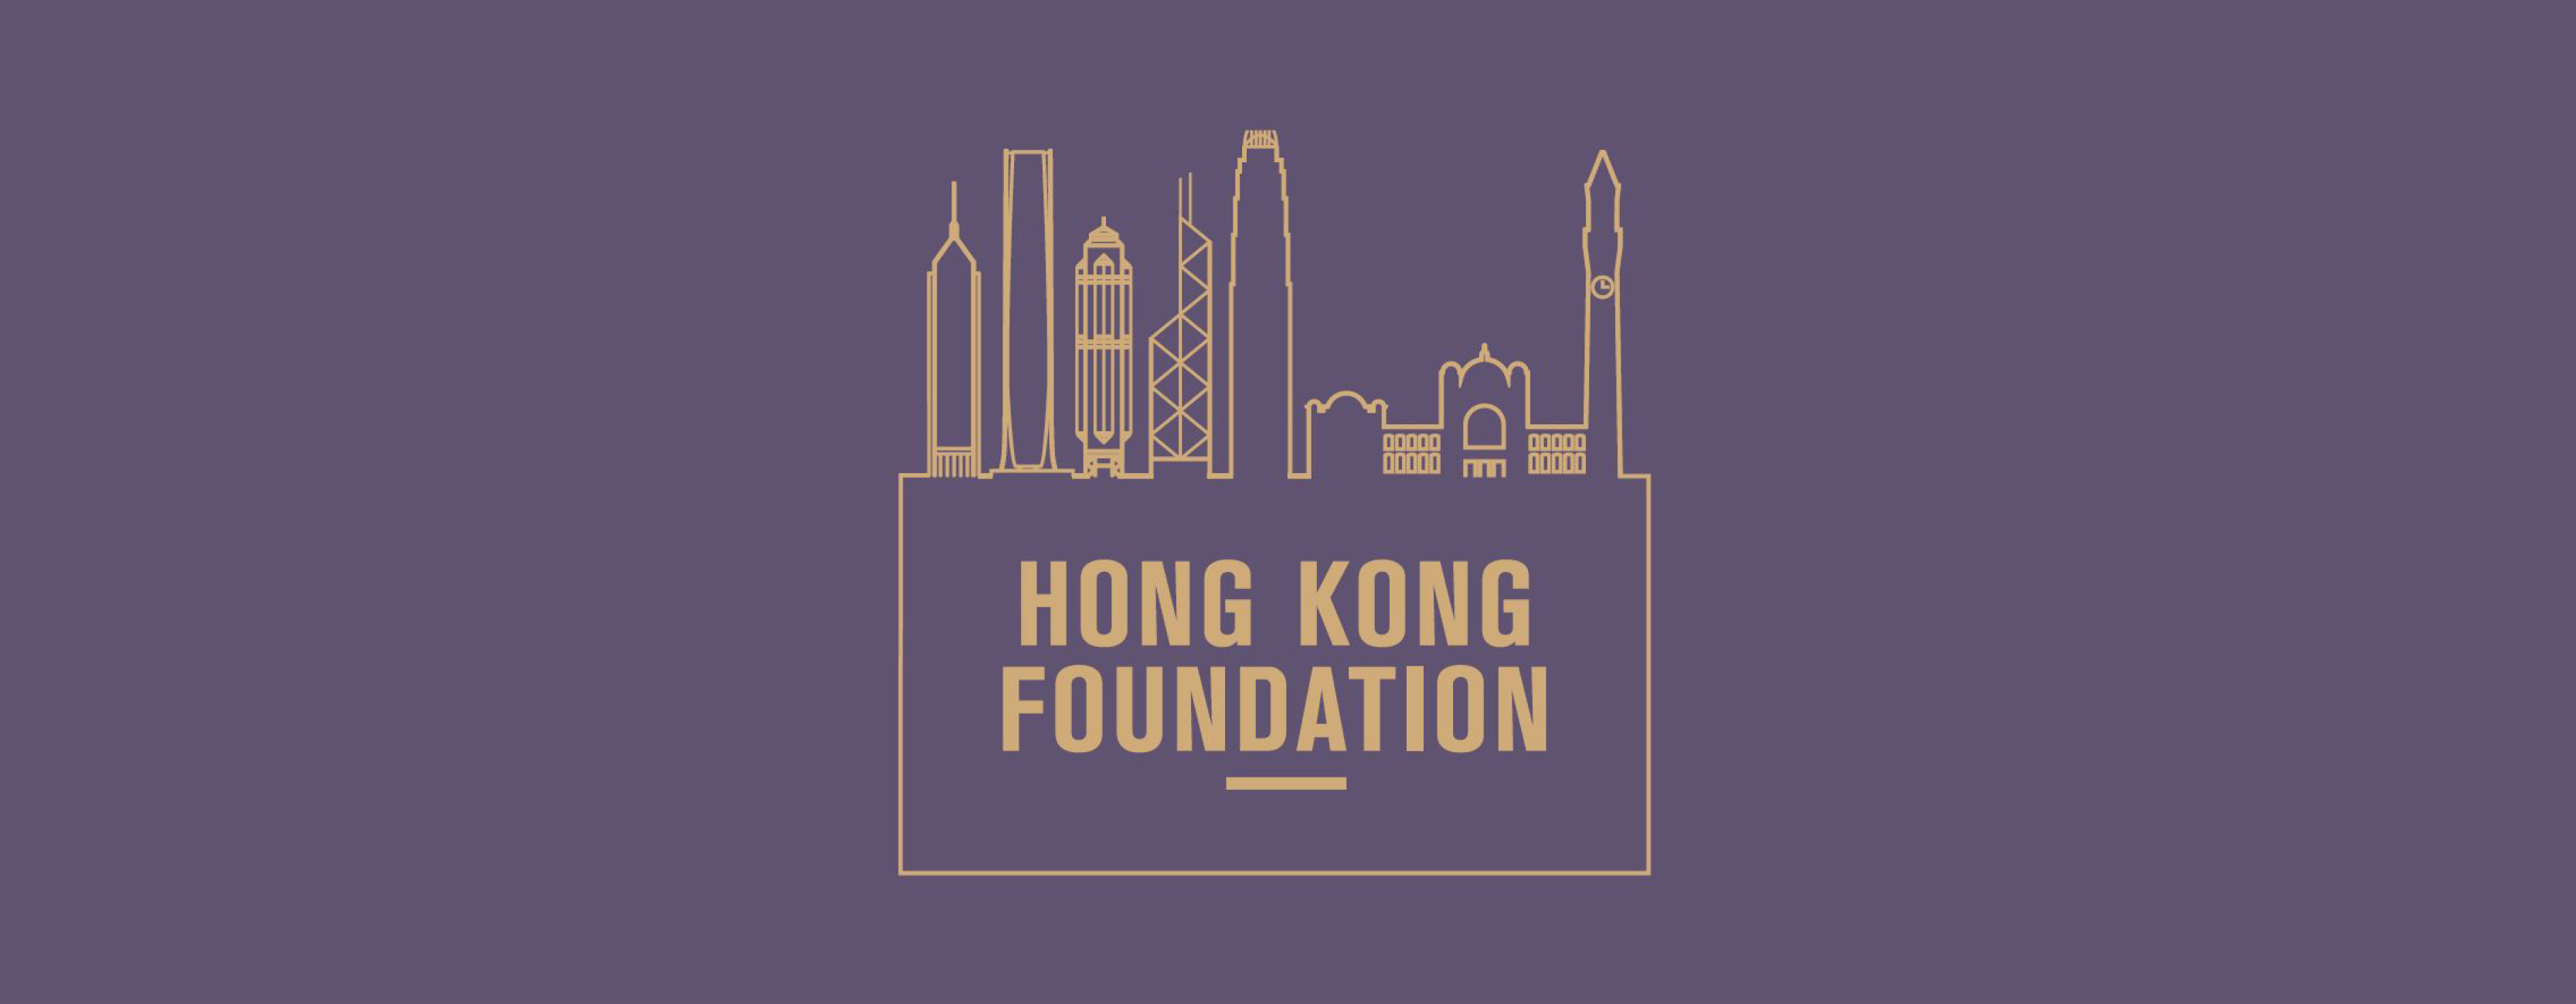 hkf_logo_email_banner